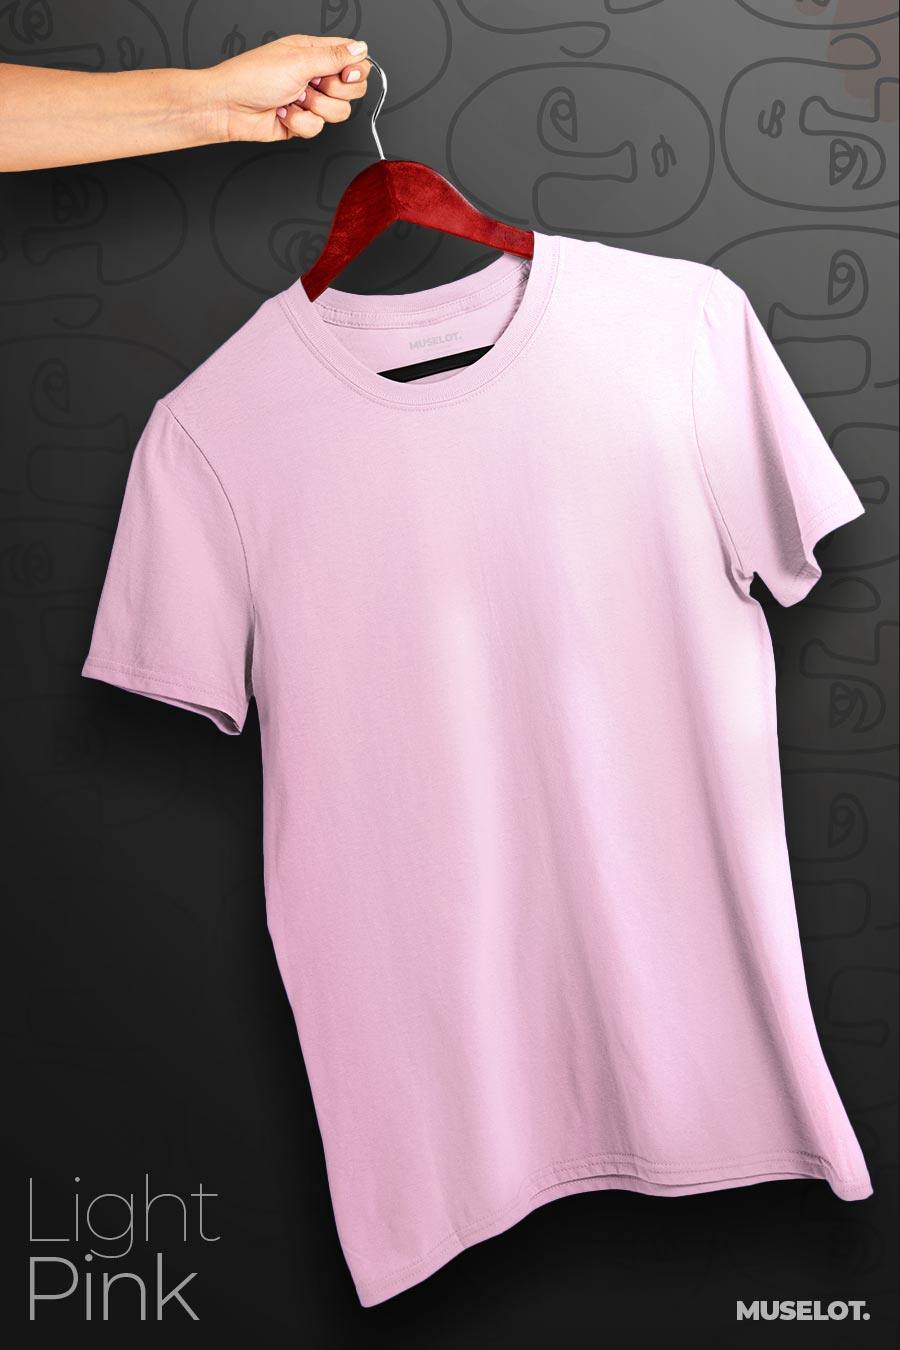 VIMEN】Plus Size Men Plain Polo Shirt (XL-5XL). Plus Size Clothes Online  Shop Singapore - Large Size Clothing Shop